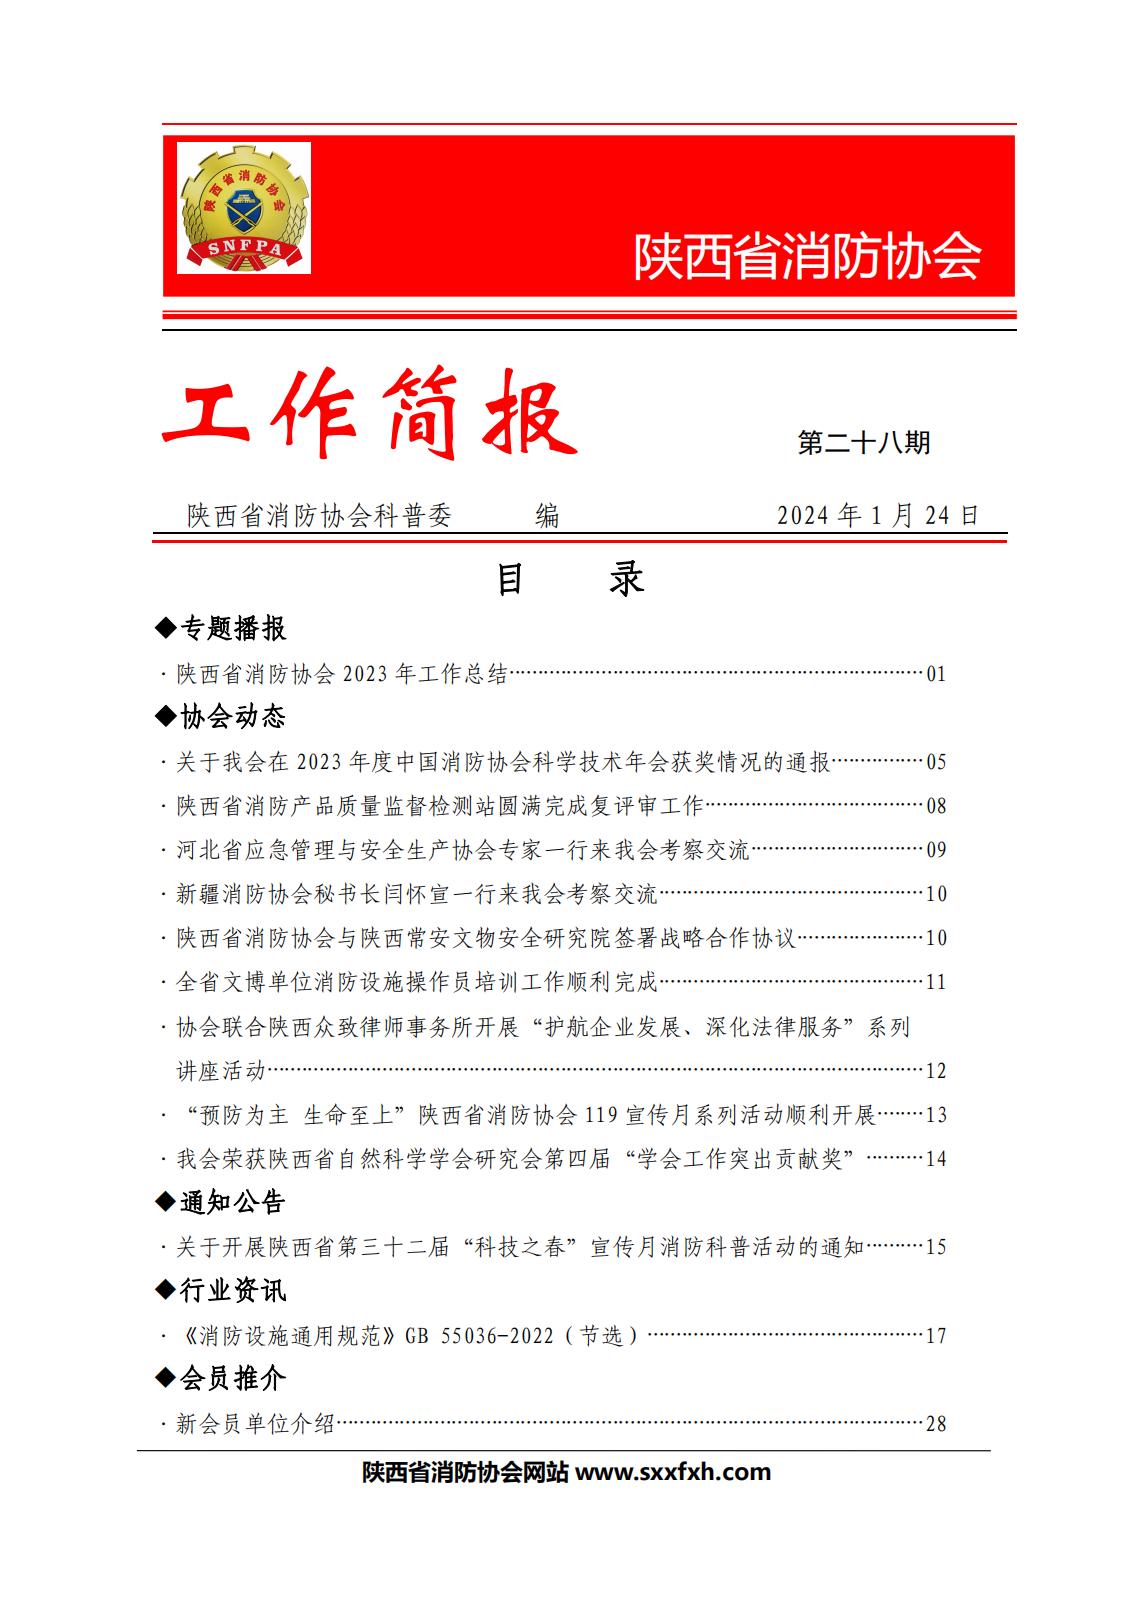 陕西省消防协会第二十八期工作简报